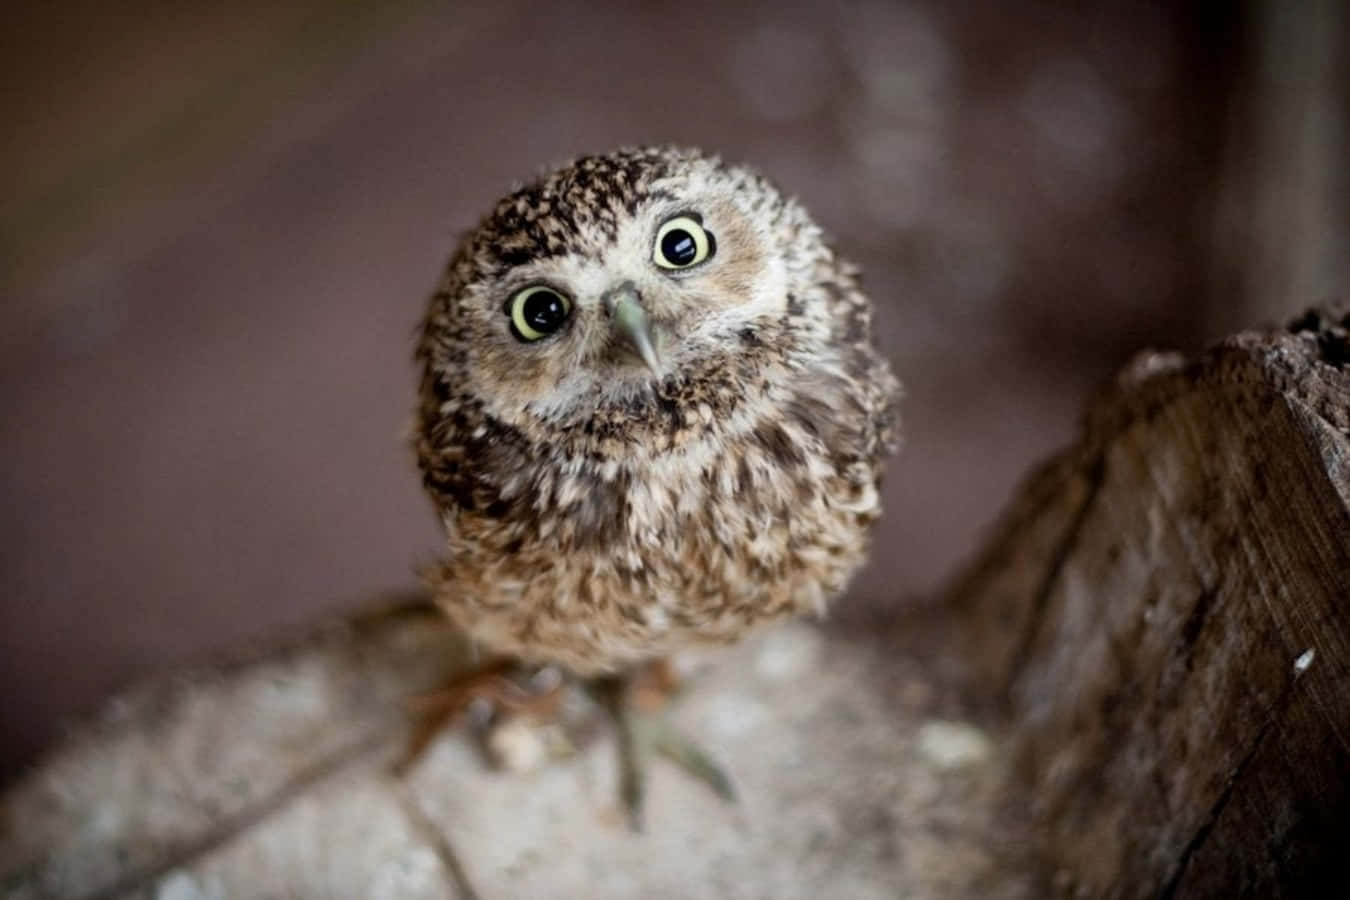 Adorable Baby Owl Posing